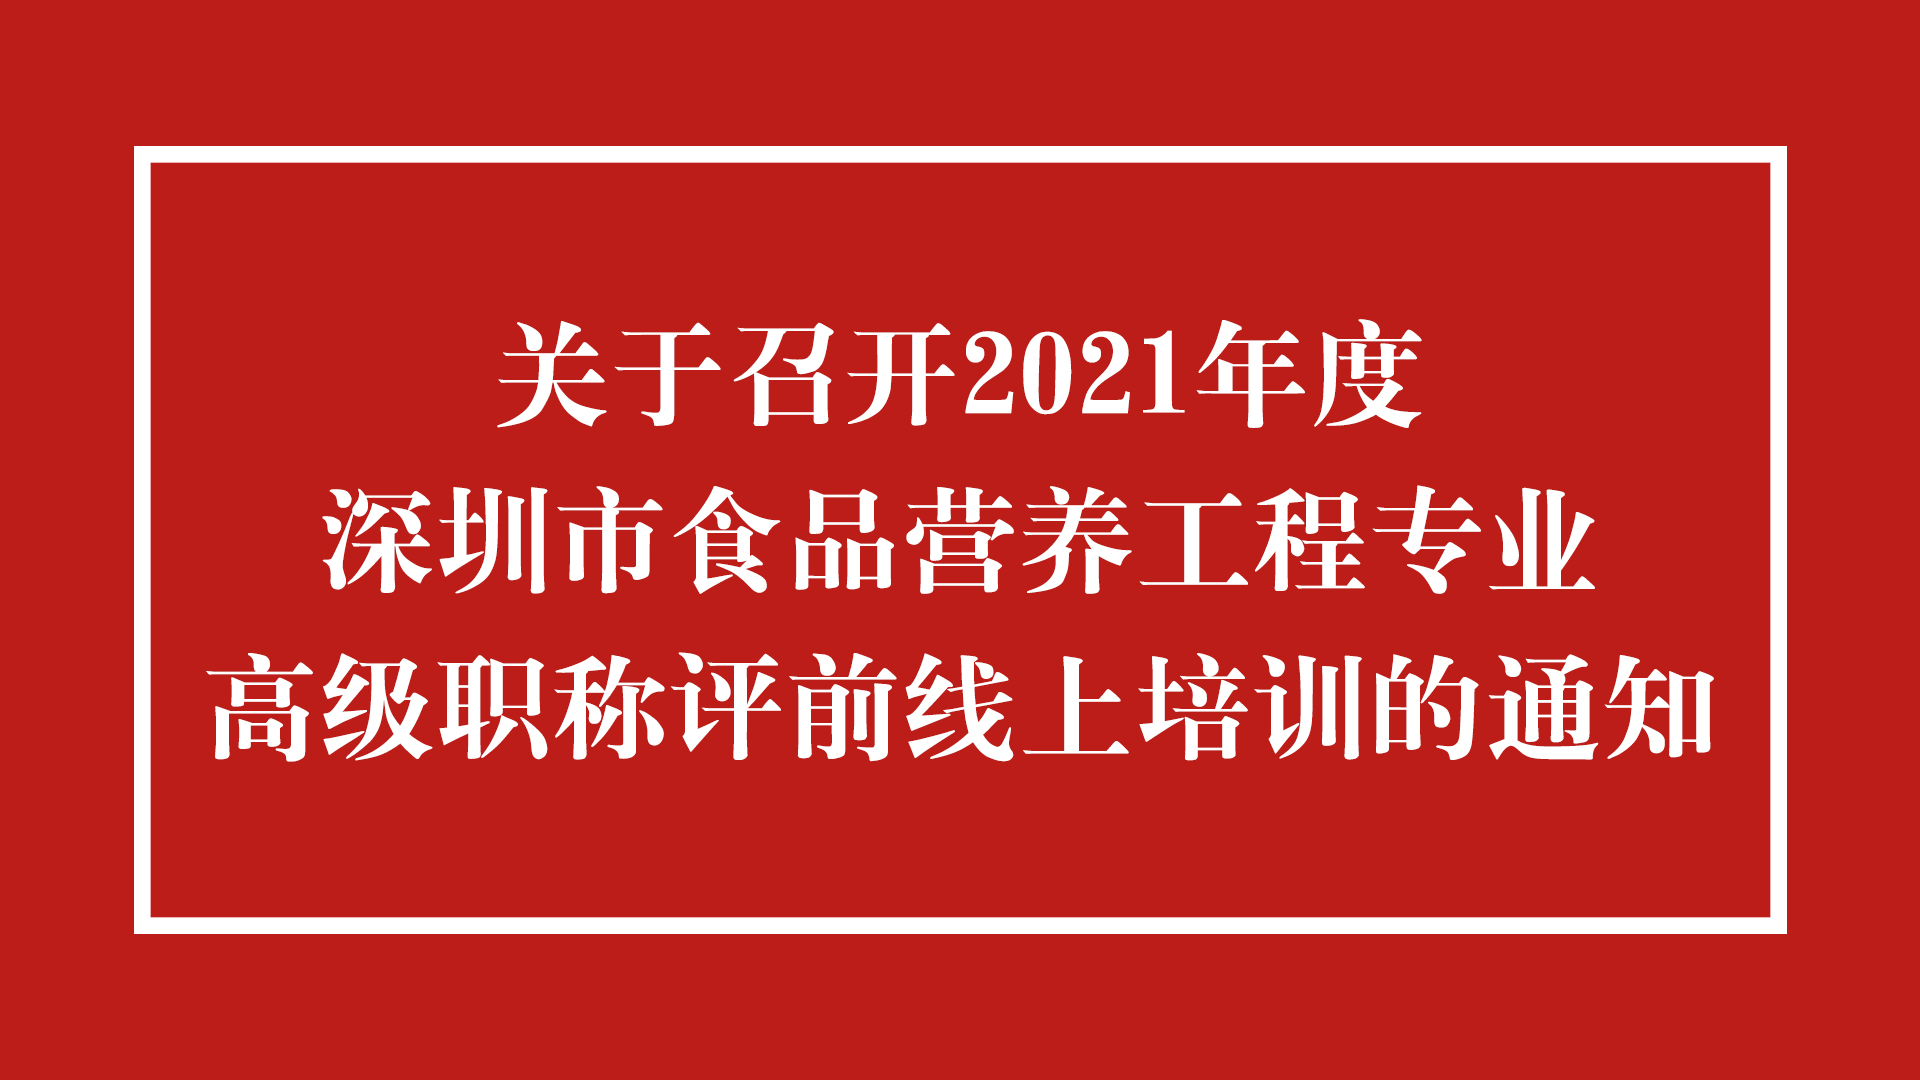 关于召开2021年度深圳市食品营养工程专业高级职称评前线上培训的通知